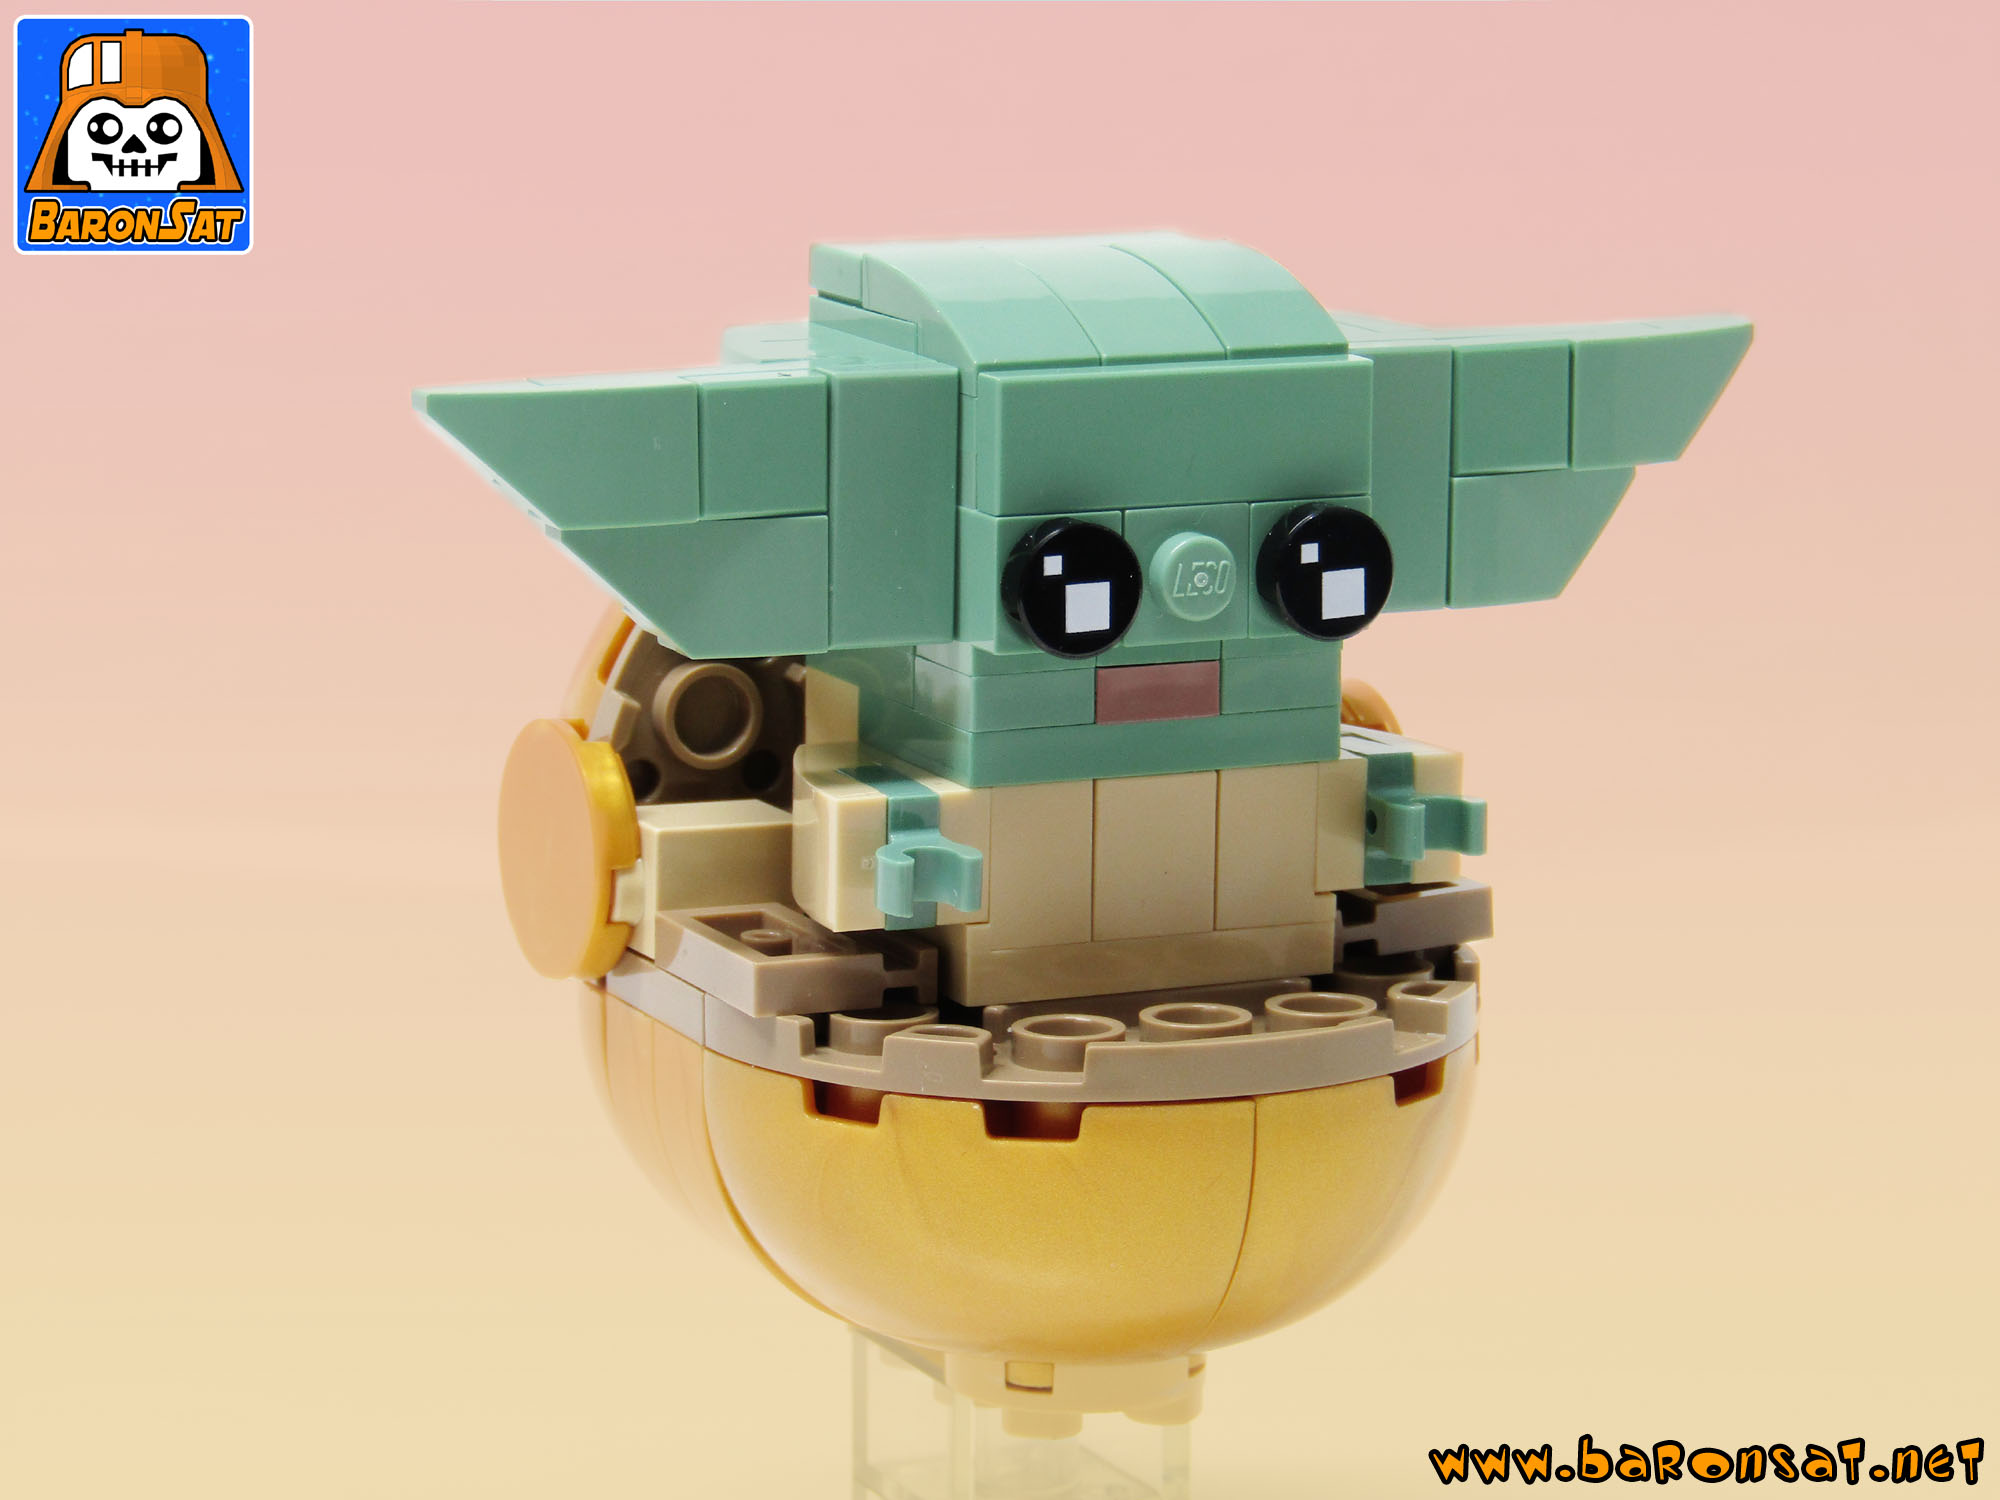 Lego baby Yoda Brickheadz moc model